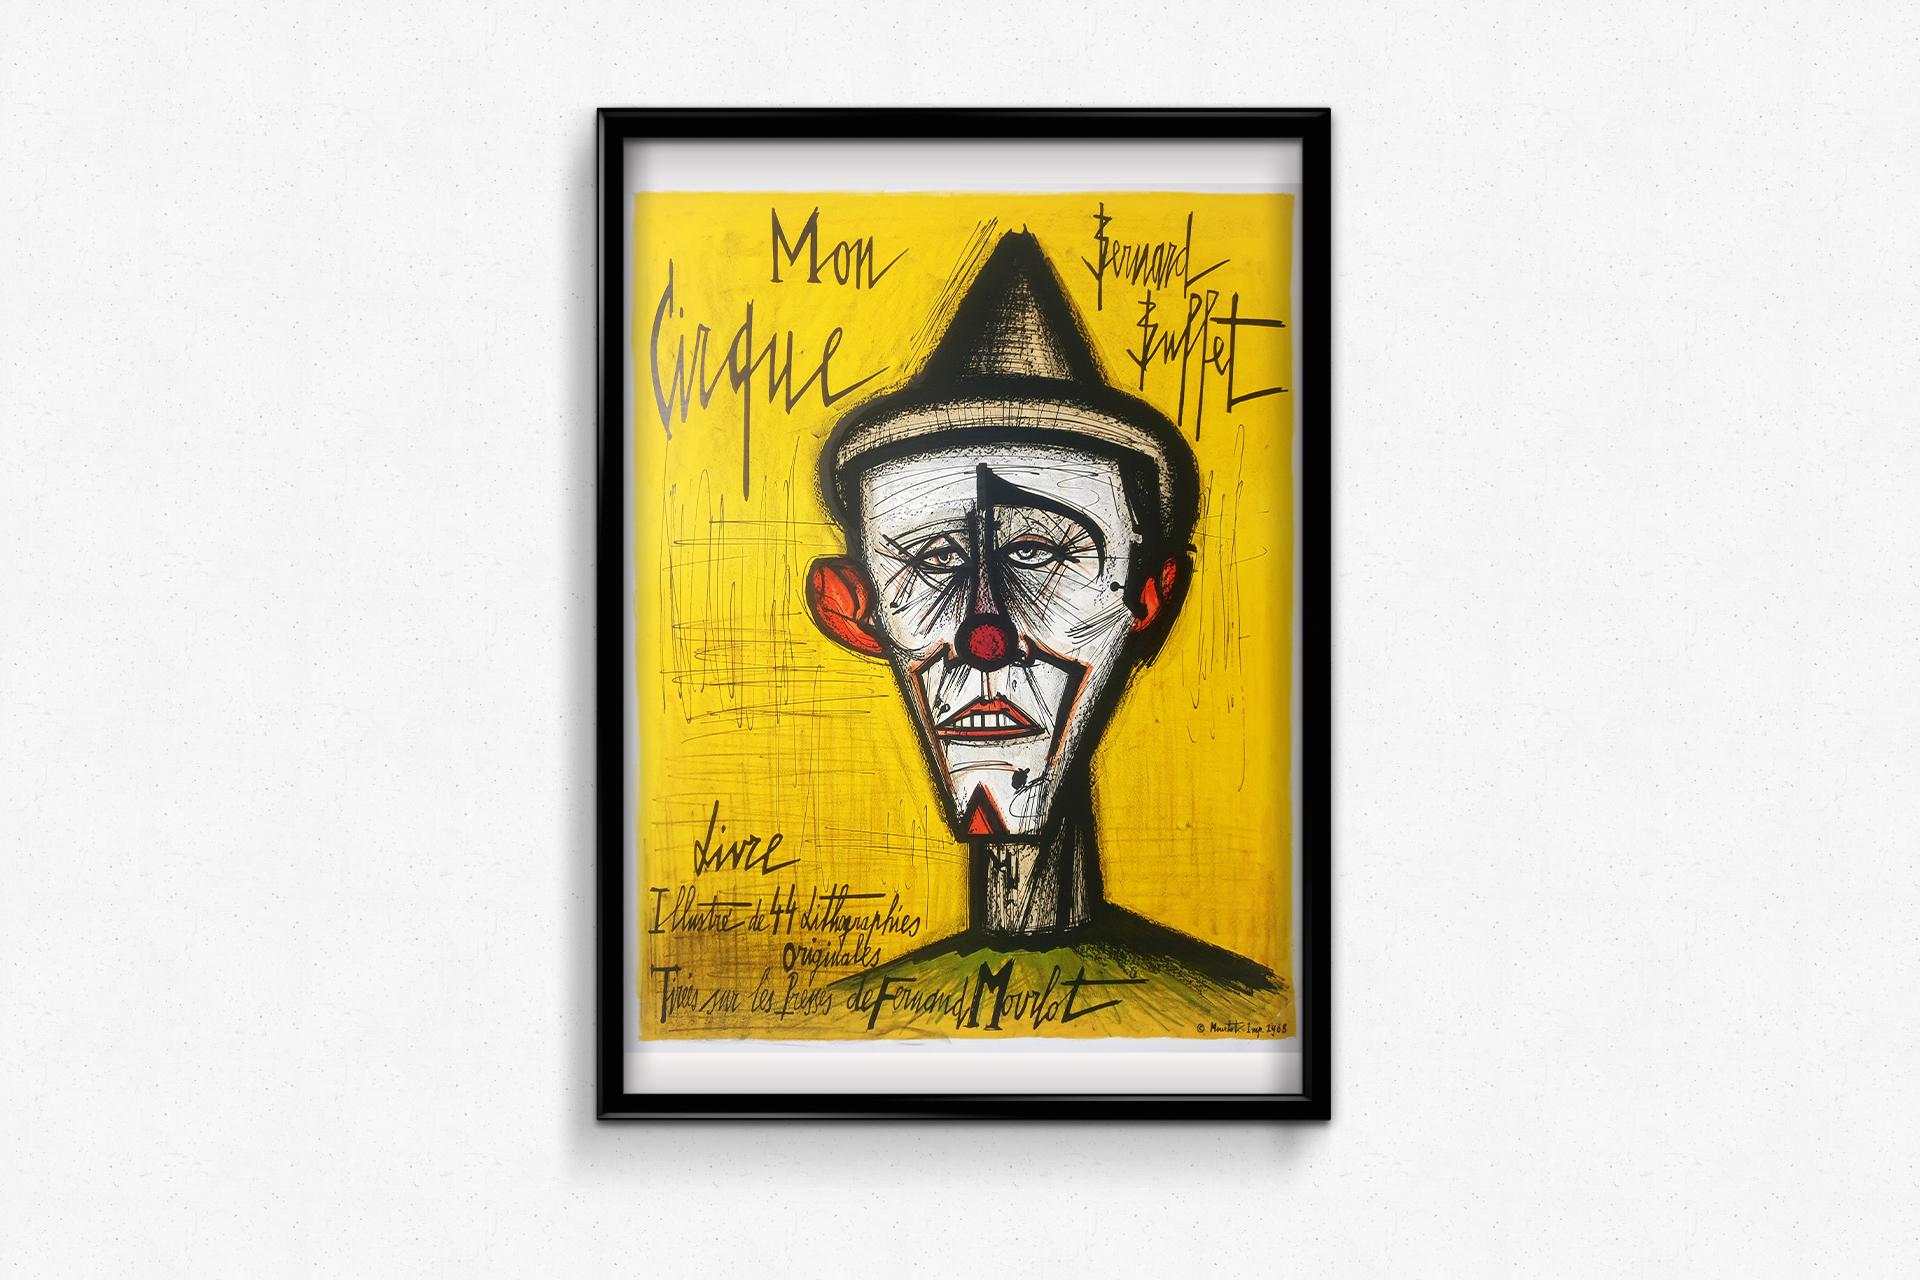 1968 Original exhibition poster of Bernard Buffet - Mon Cirque - Circus For Sale 1